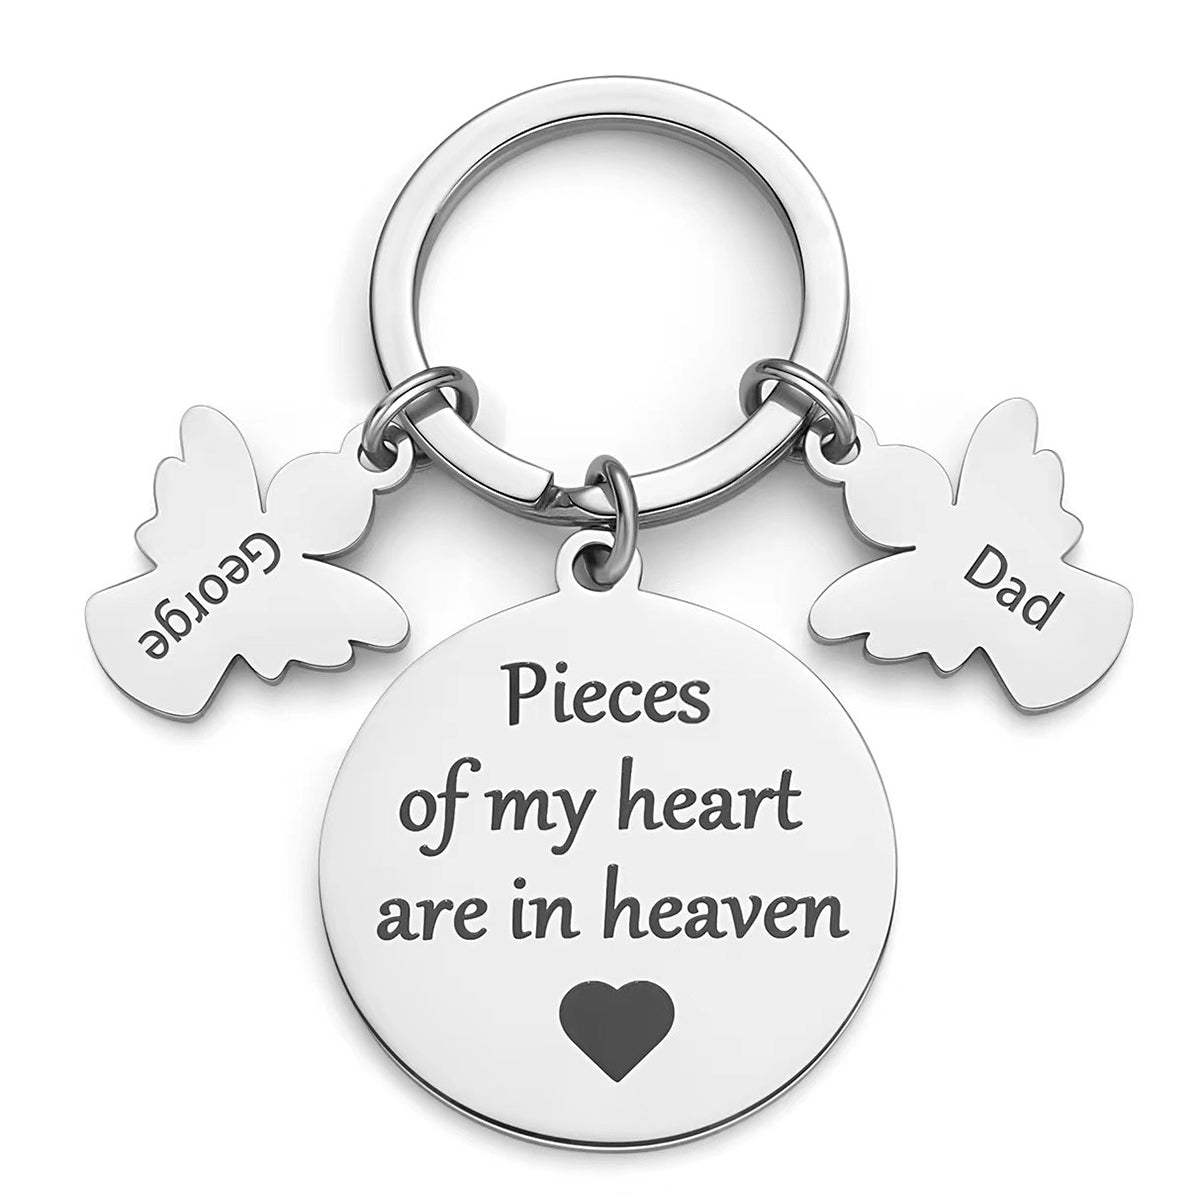 Personalised memorial angel keychain